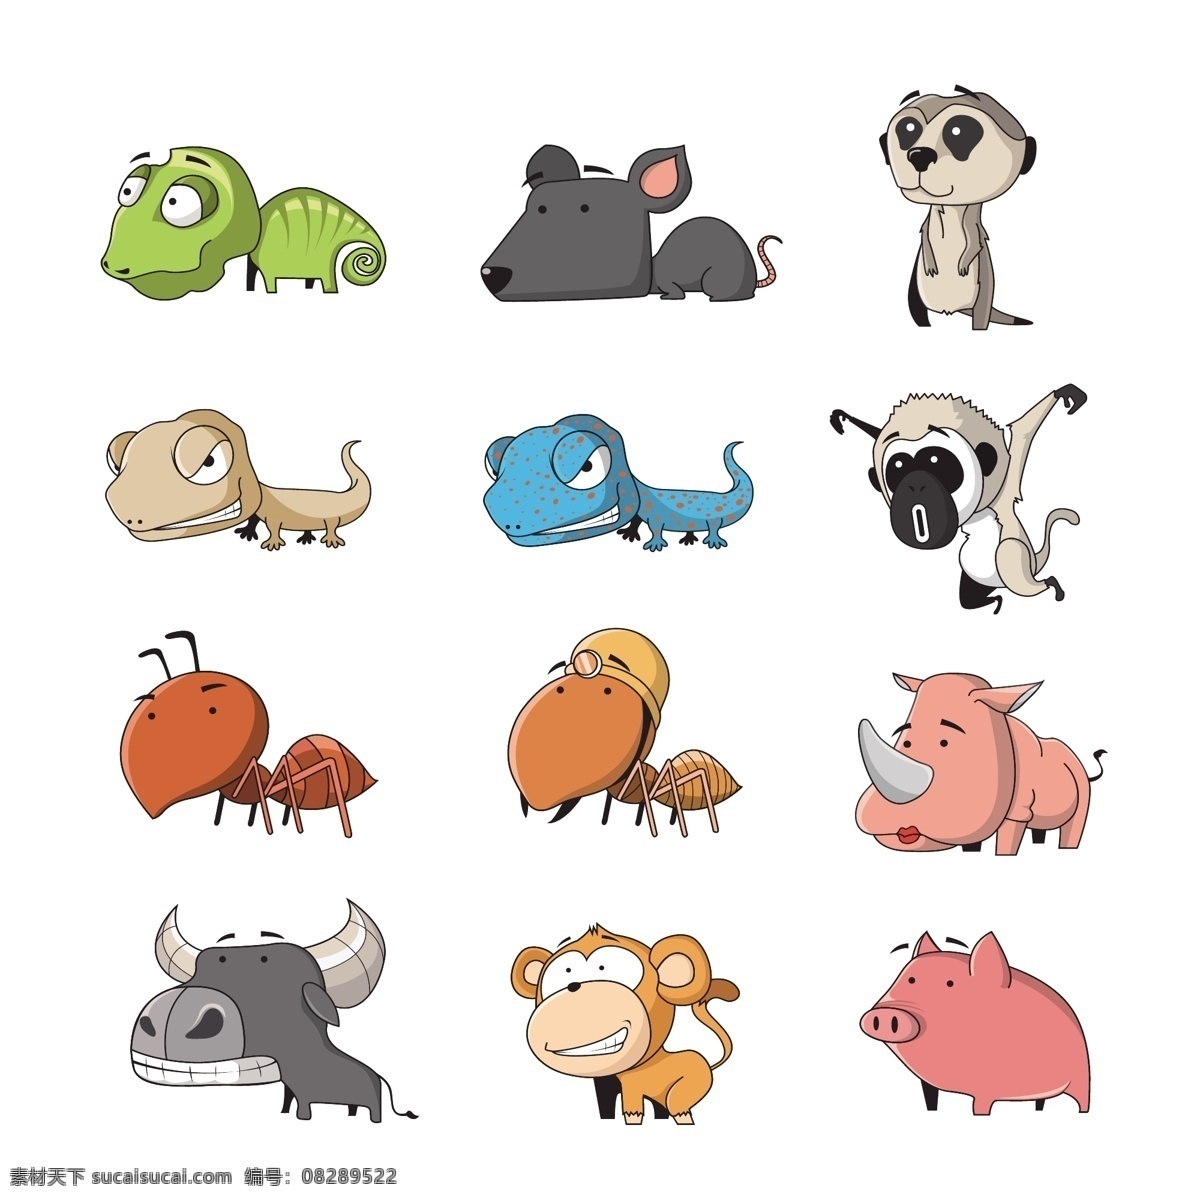 各种 动物 可爱 卡通 图 卡通图